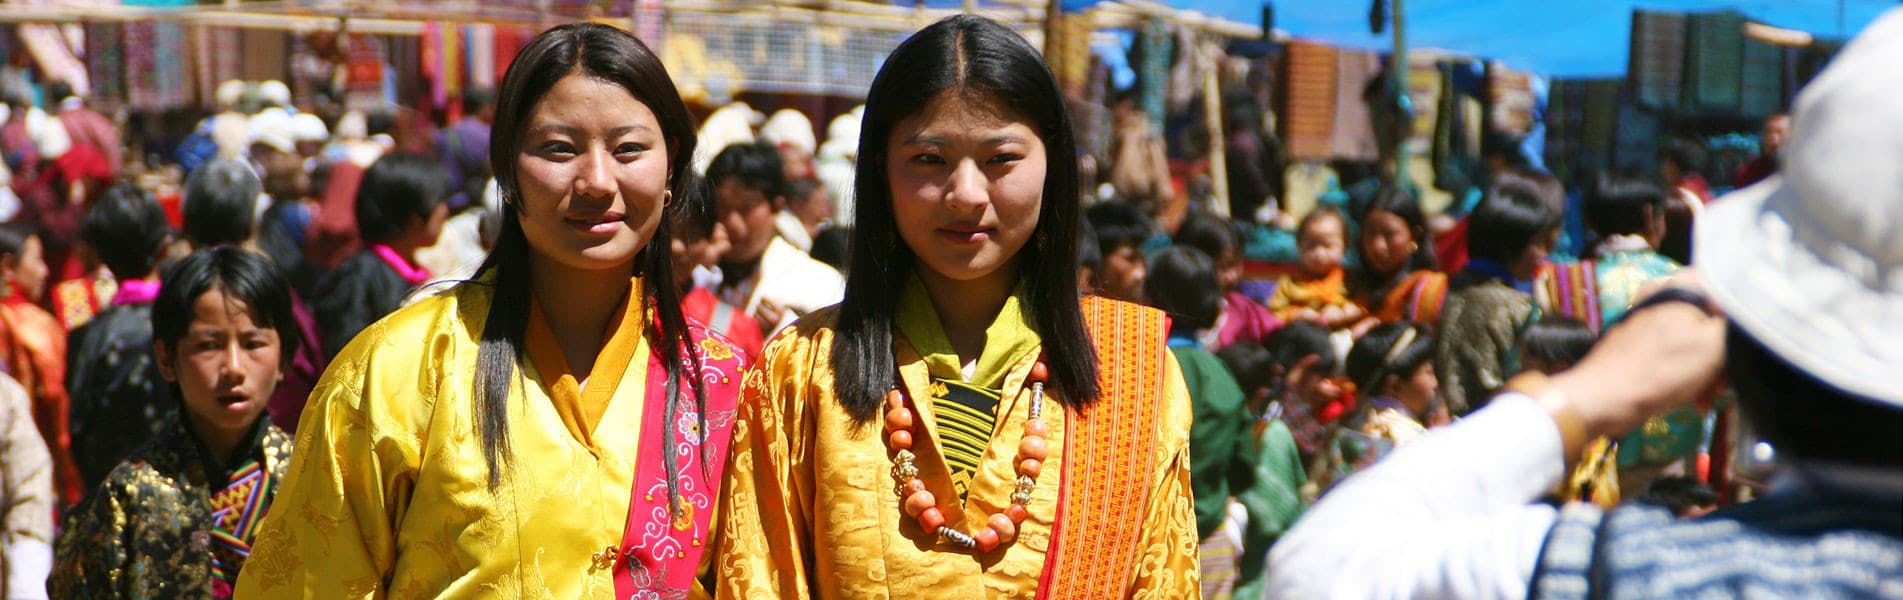 Local people in Bhutan